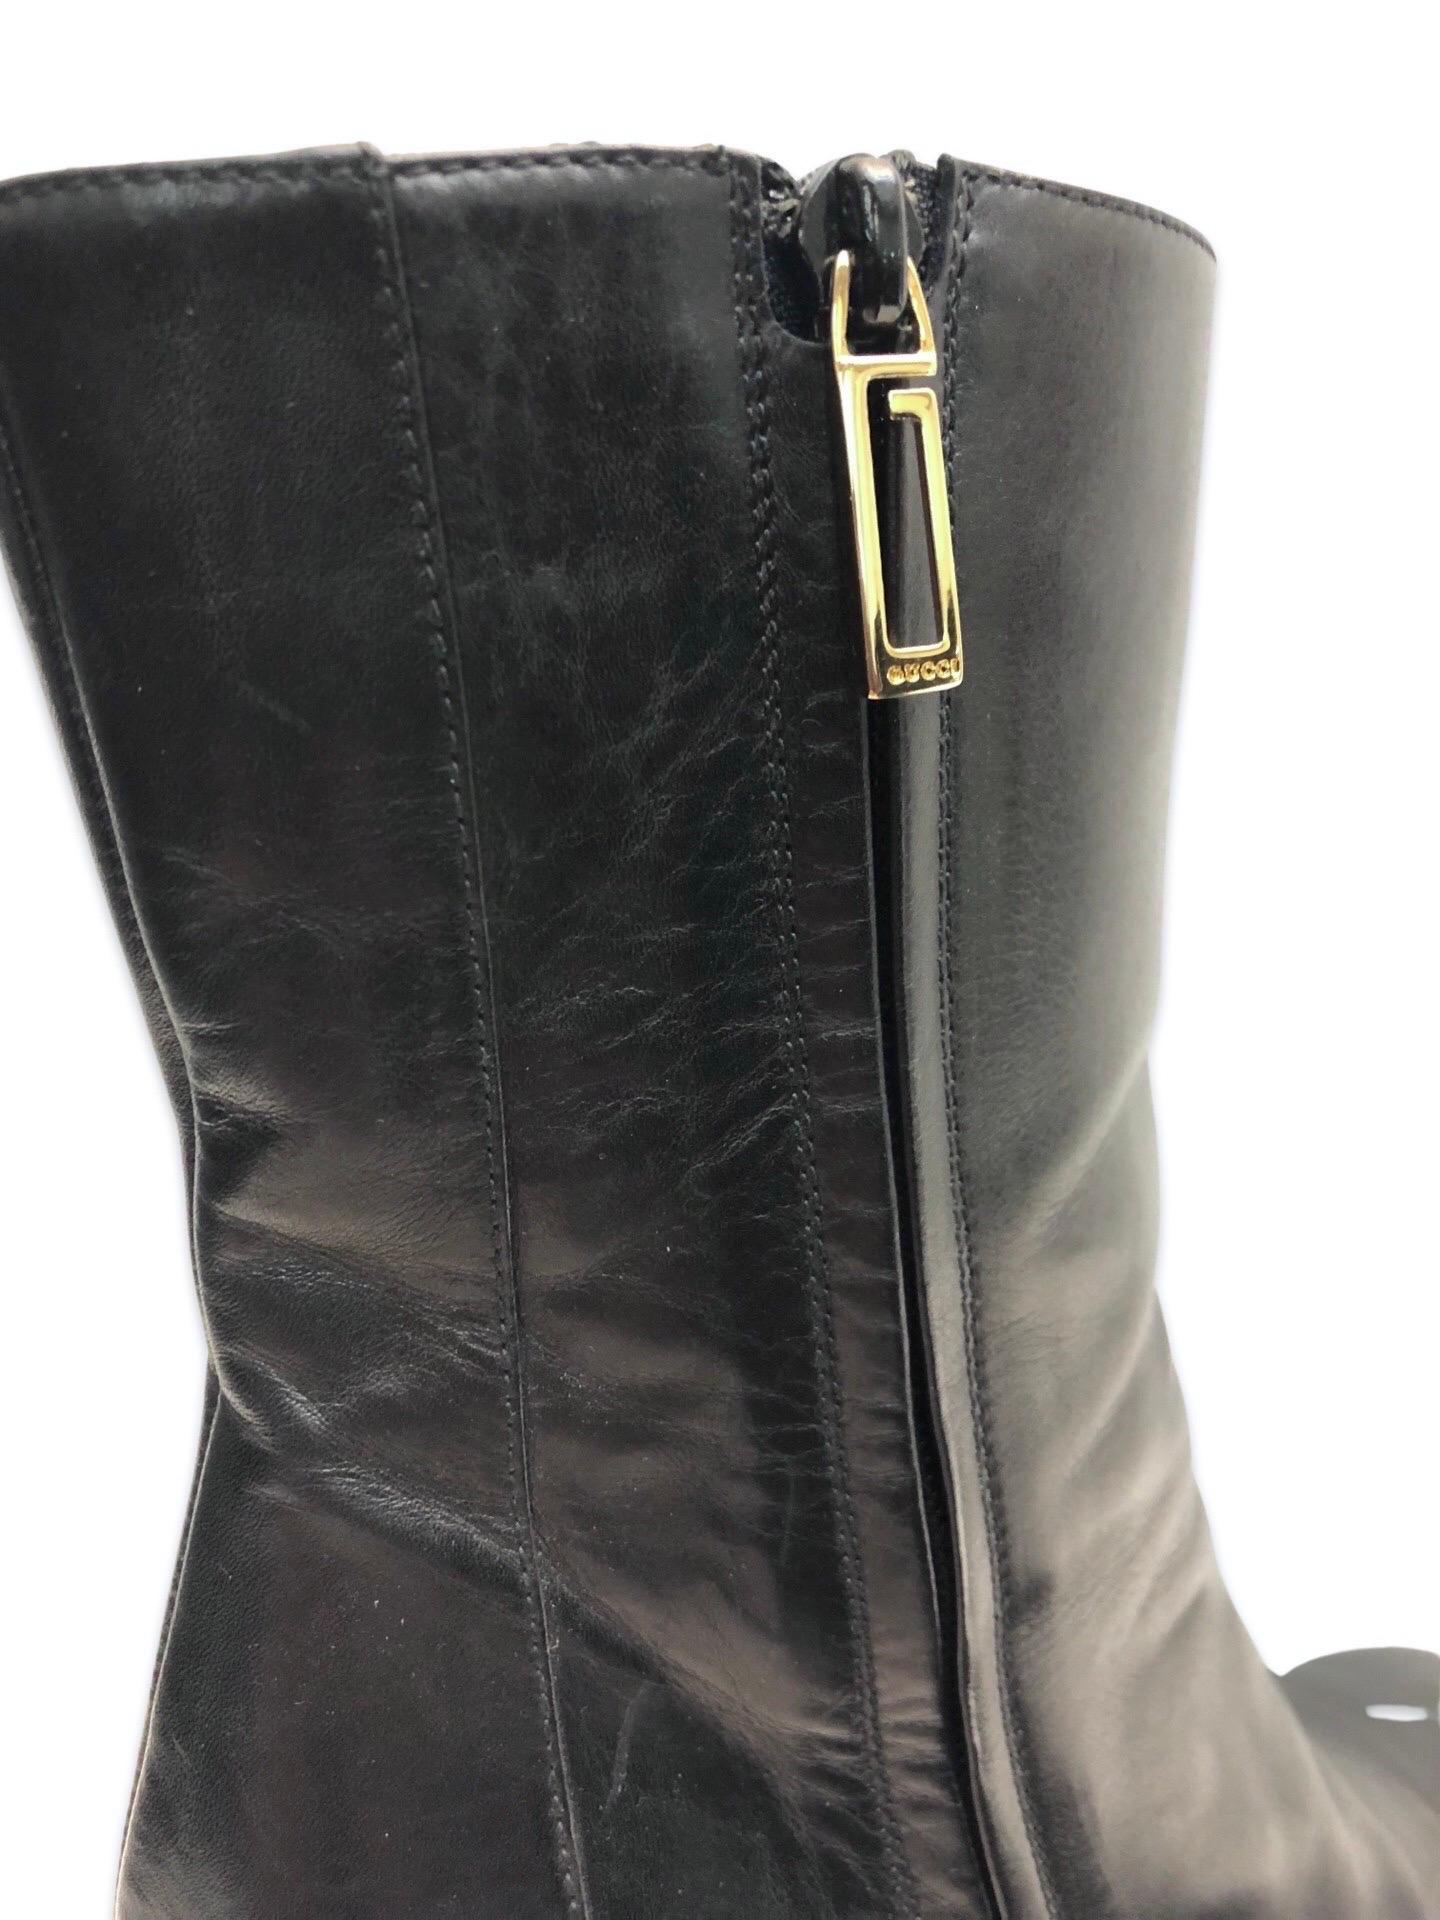 - Gucci by Tom Ford schwarze Lederstiefel mit quadratischer Fußspitze in ausgezeichnetem Zustand. 

- Mit goldfarbener Hardware und seitlichem Reißverschluss mit Gucci